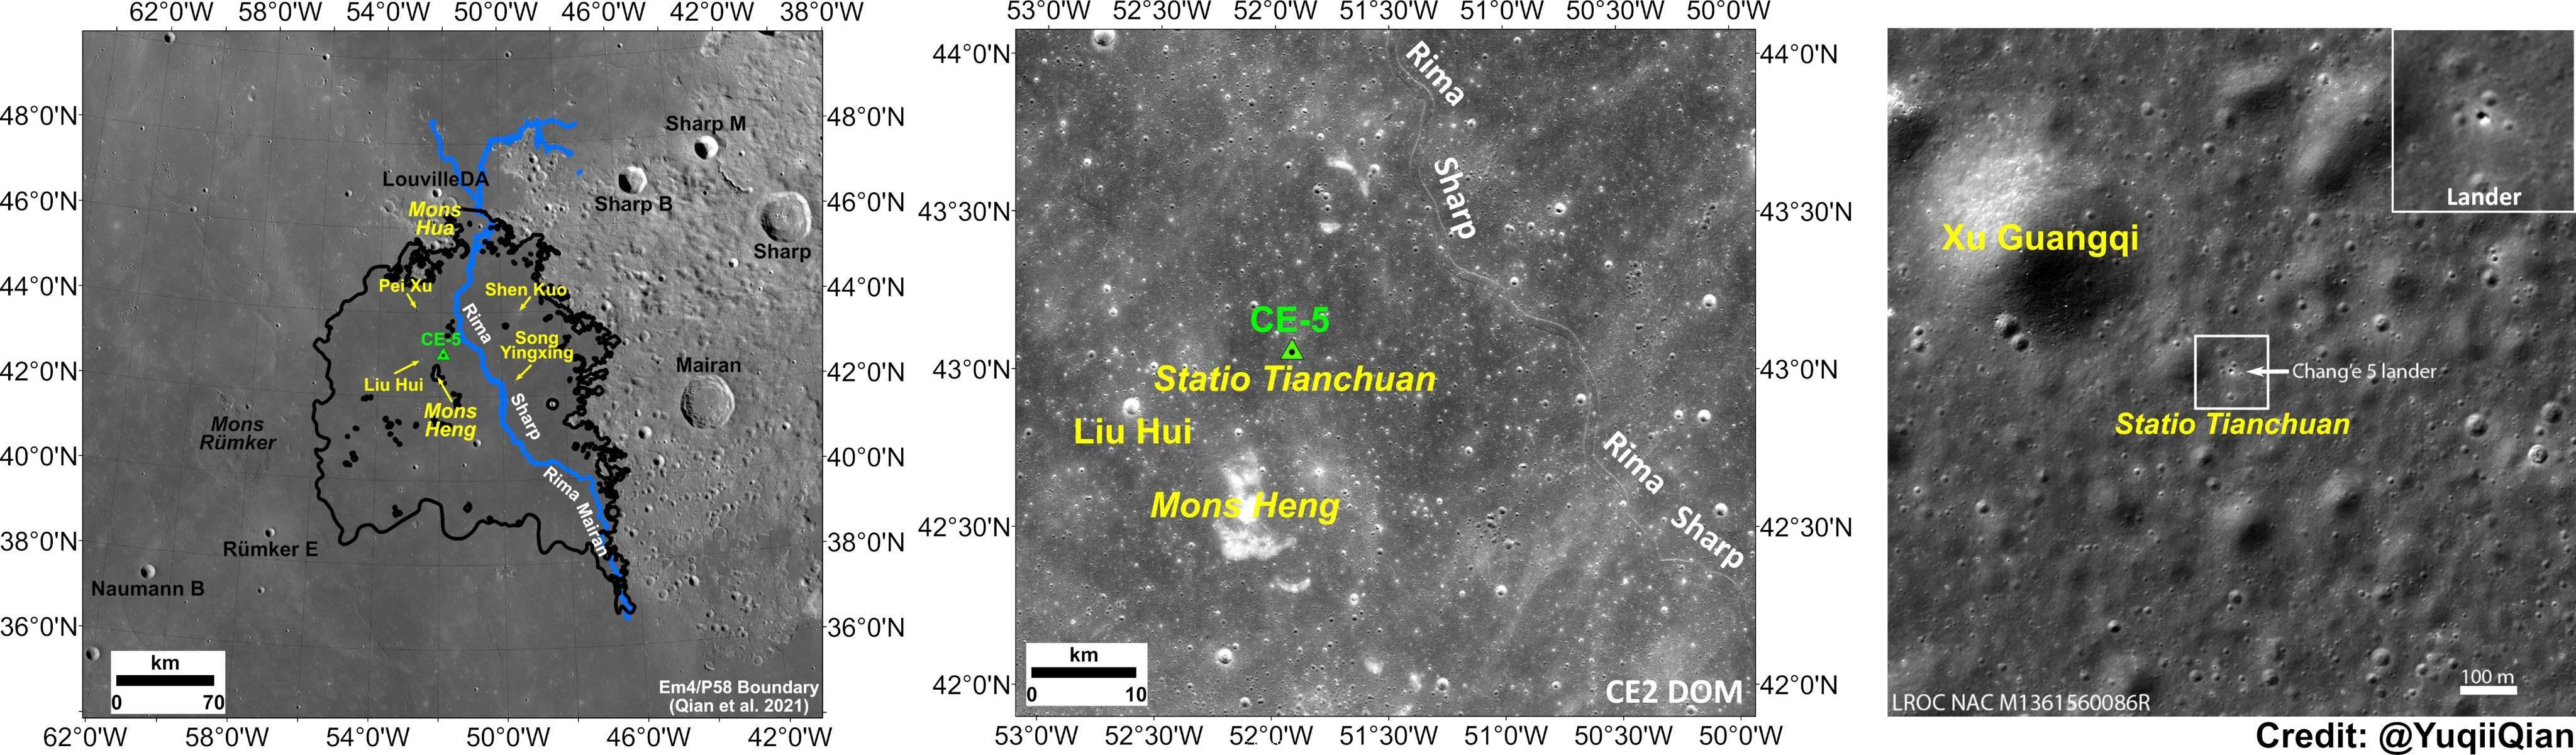 月球上多了8個中國地名：嫦娥五號著陸點命名為天船基地 